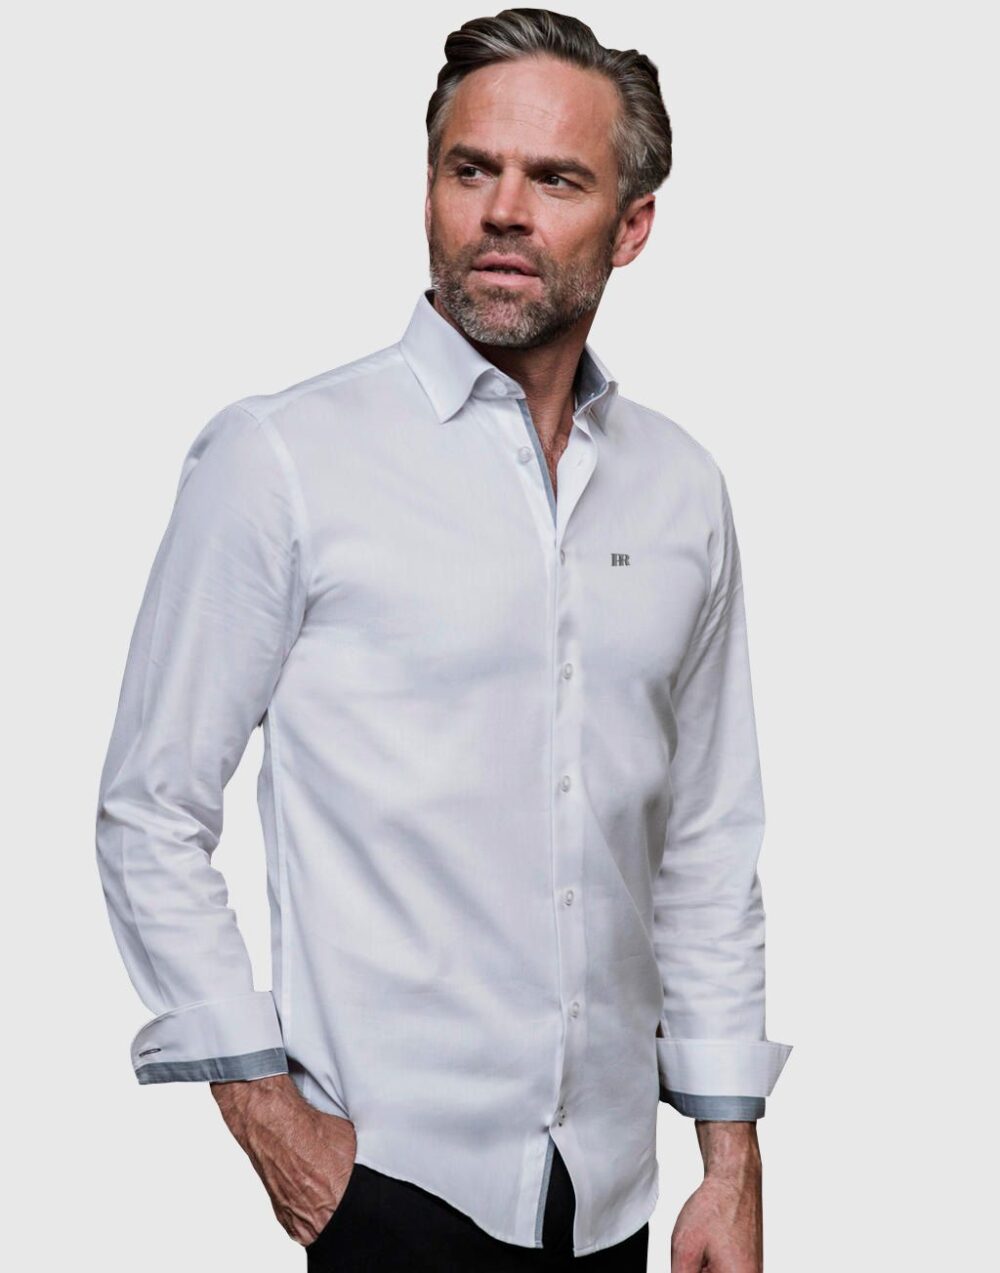 Paull Rassell Elite Shirt 703 Blanca